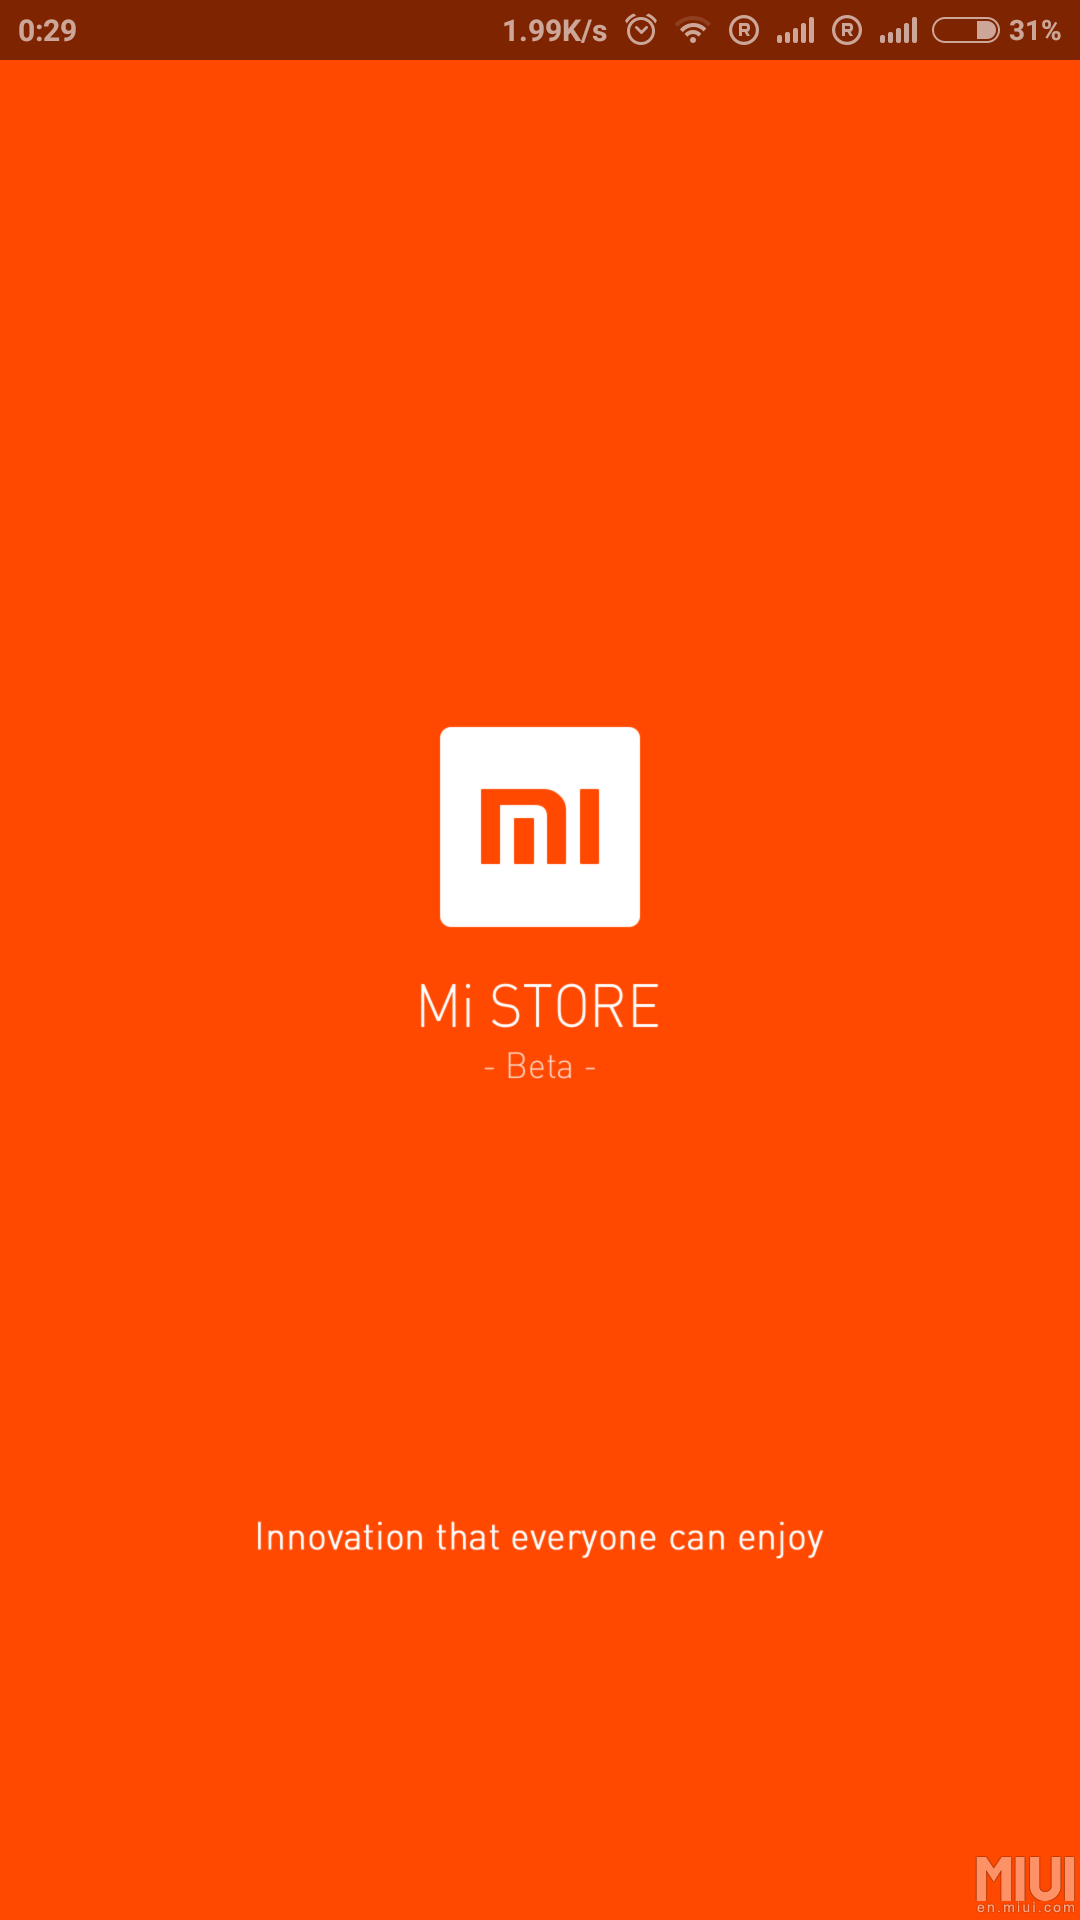 mi_store_global_india_1